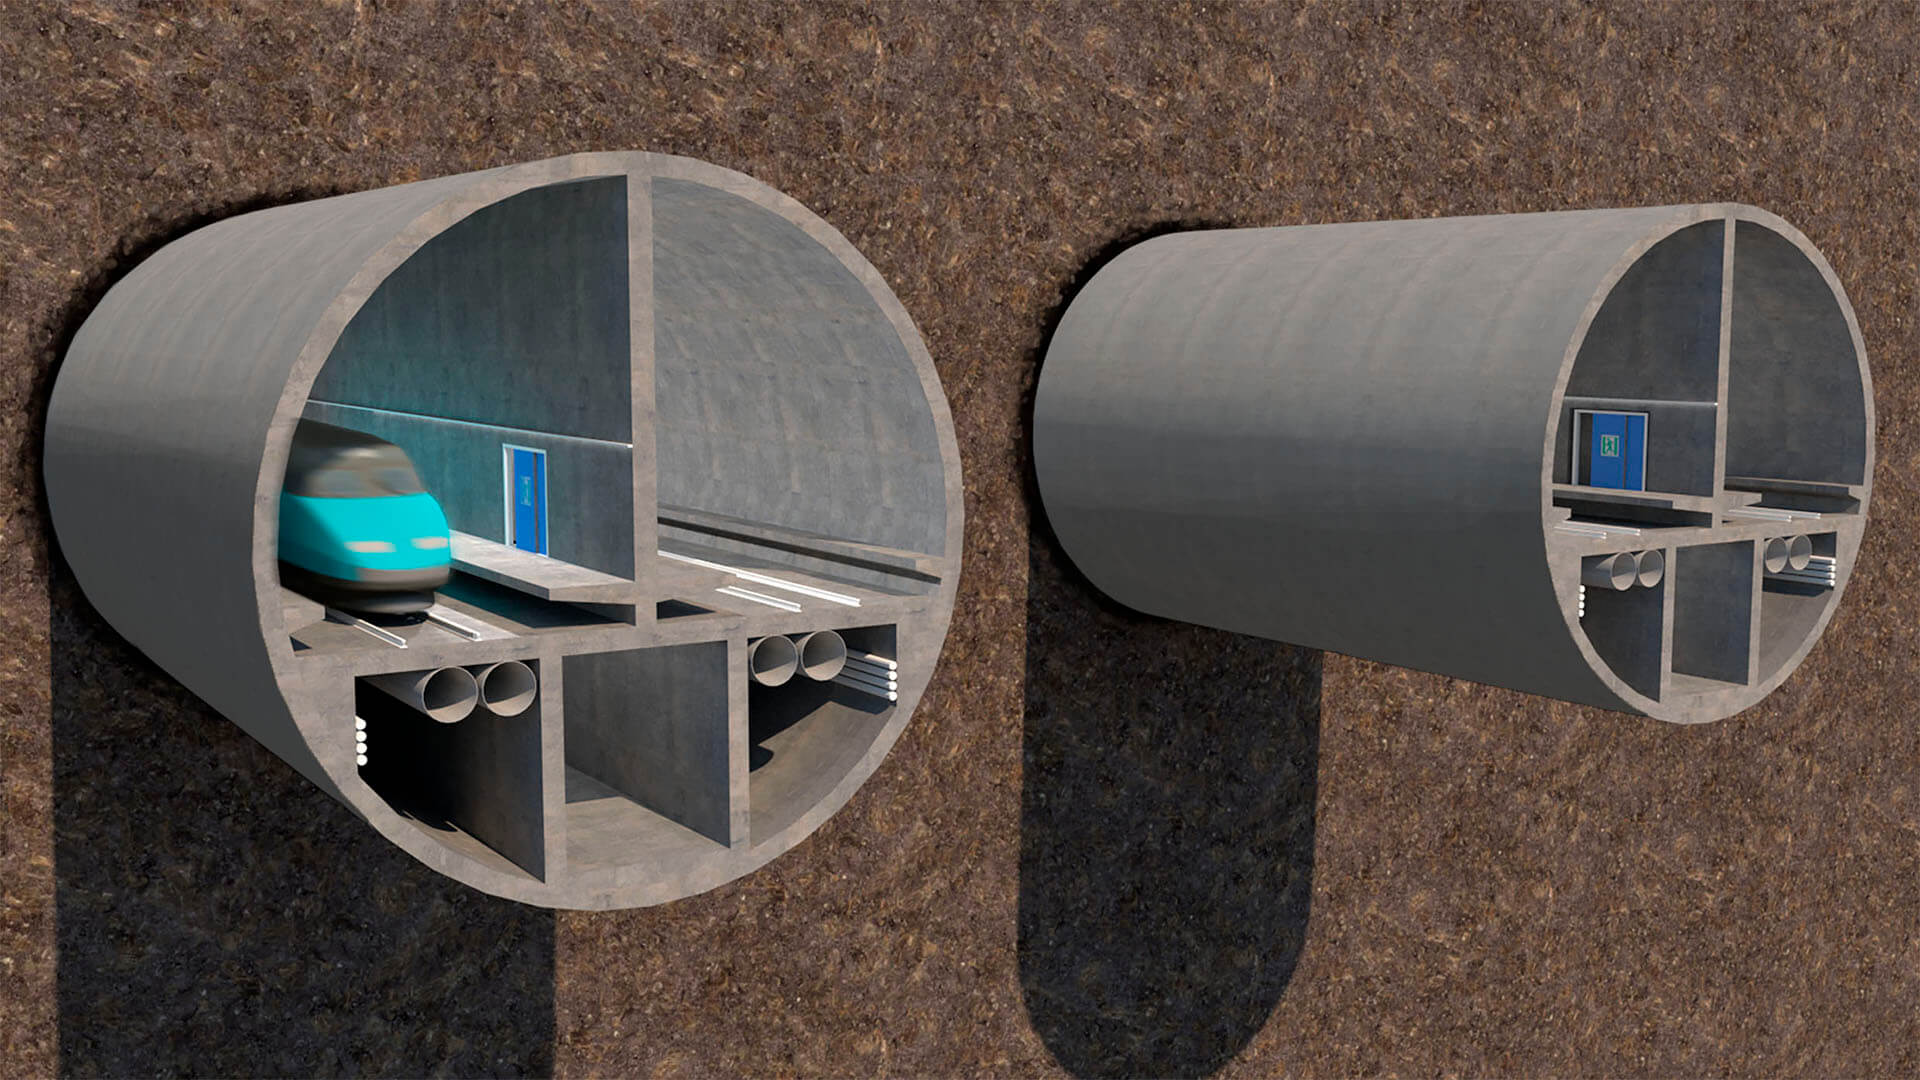 Tallinnan tunnelin seuraava suunnitteluvaihe etenee A-Insinöörien ja Pöyryn valmistelemana.